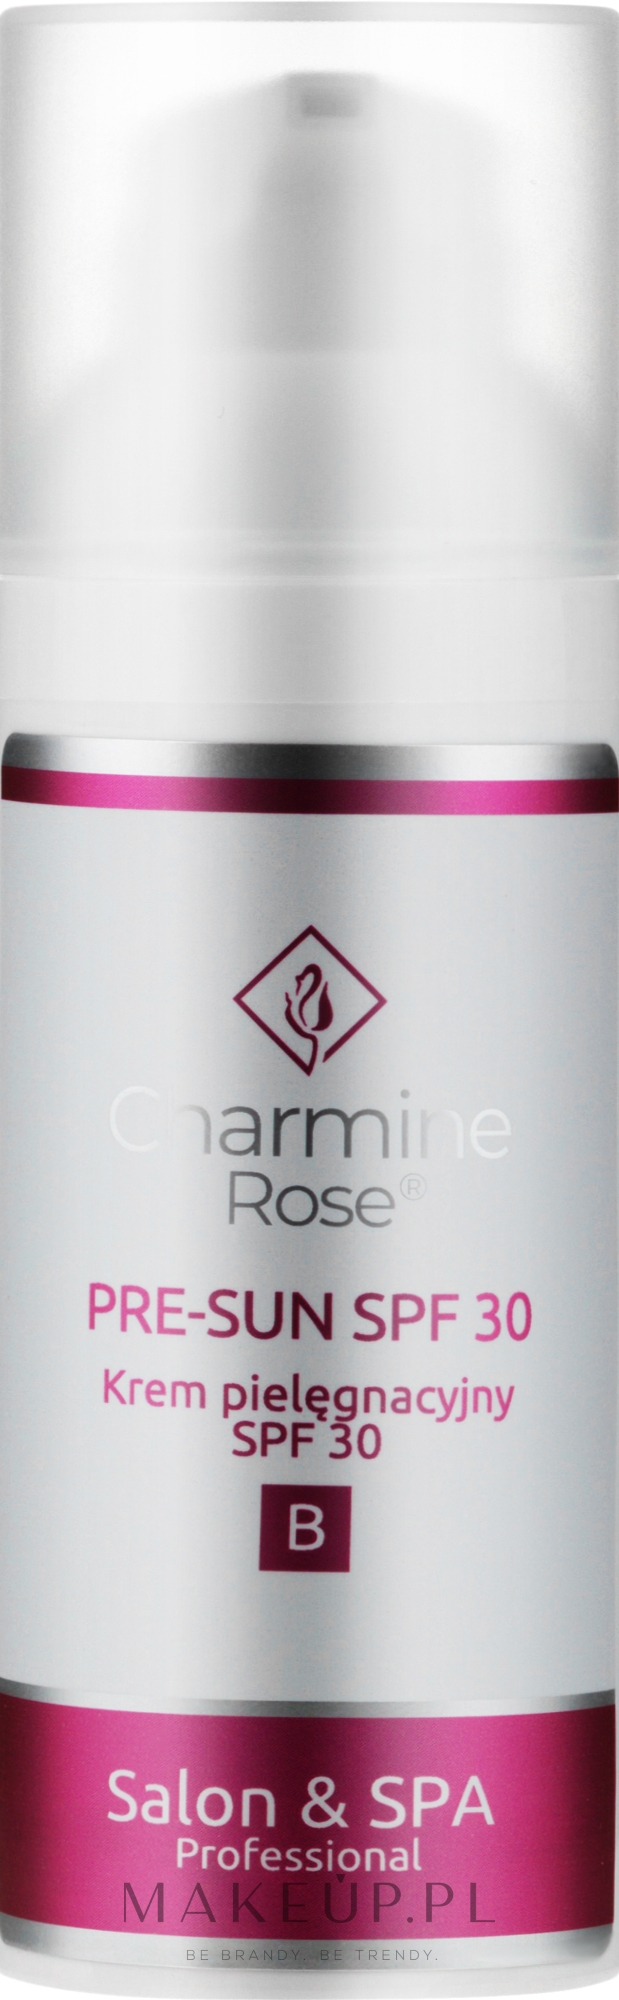 Krem pielęgnacyjny do twarzy SPF 30 - Charmine Rose Pre-Sun SPF 30 — Zdjęcie 50 ml